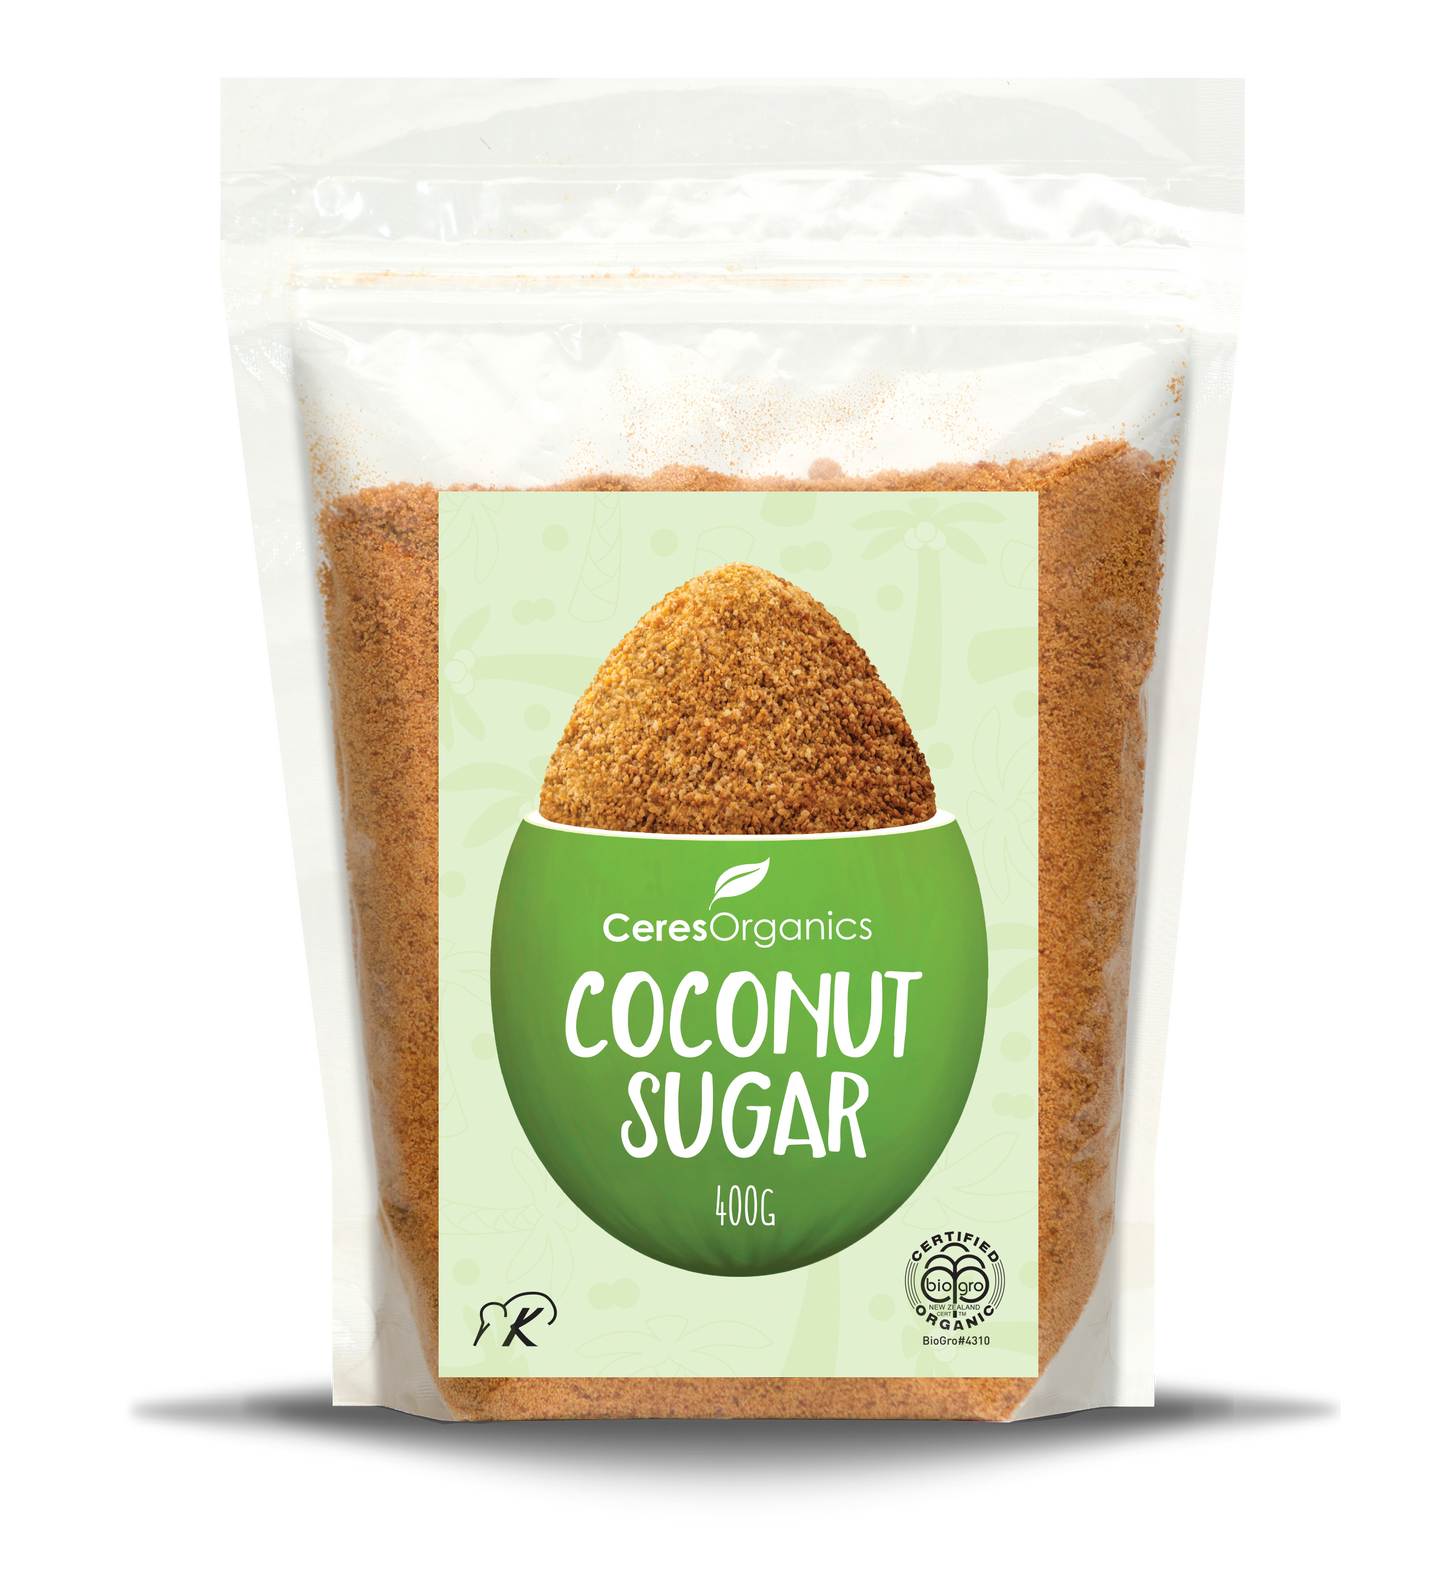 Organic Coconut Sugar - 400g